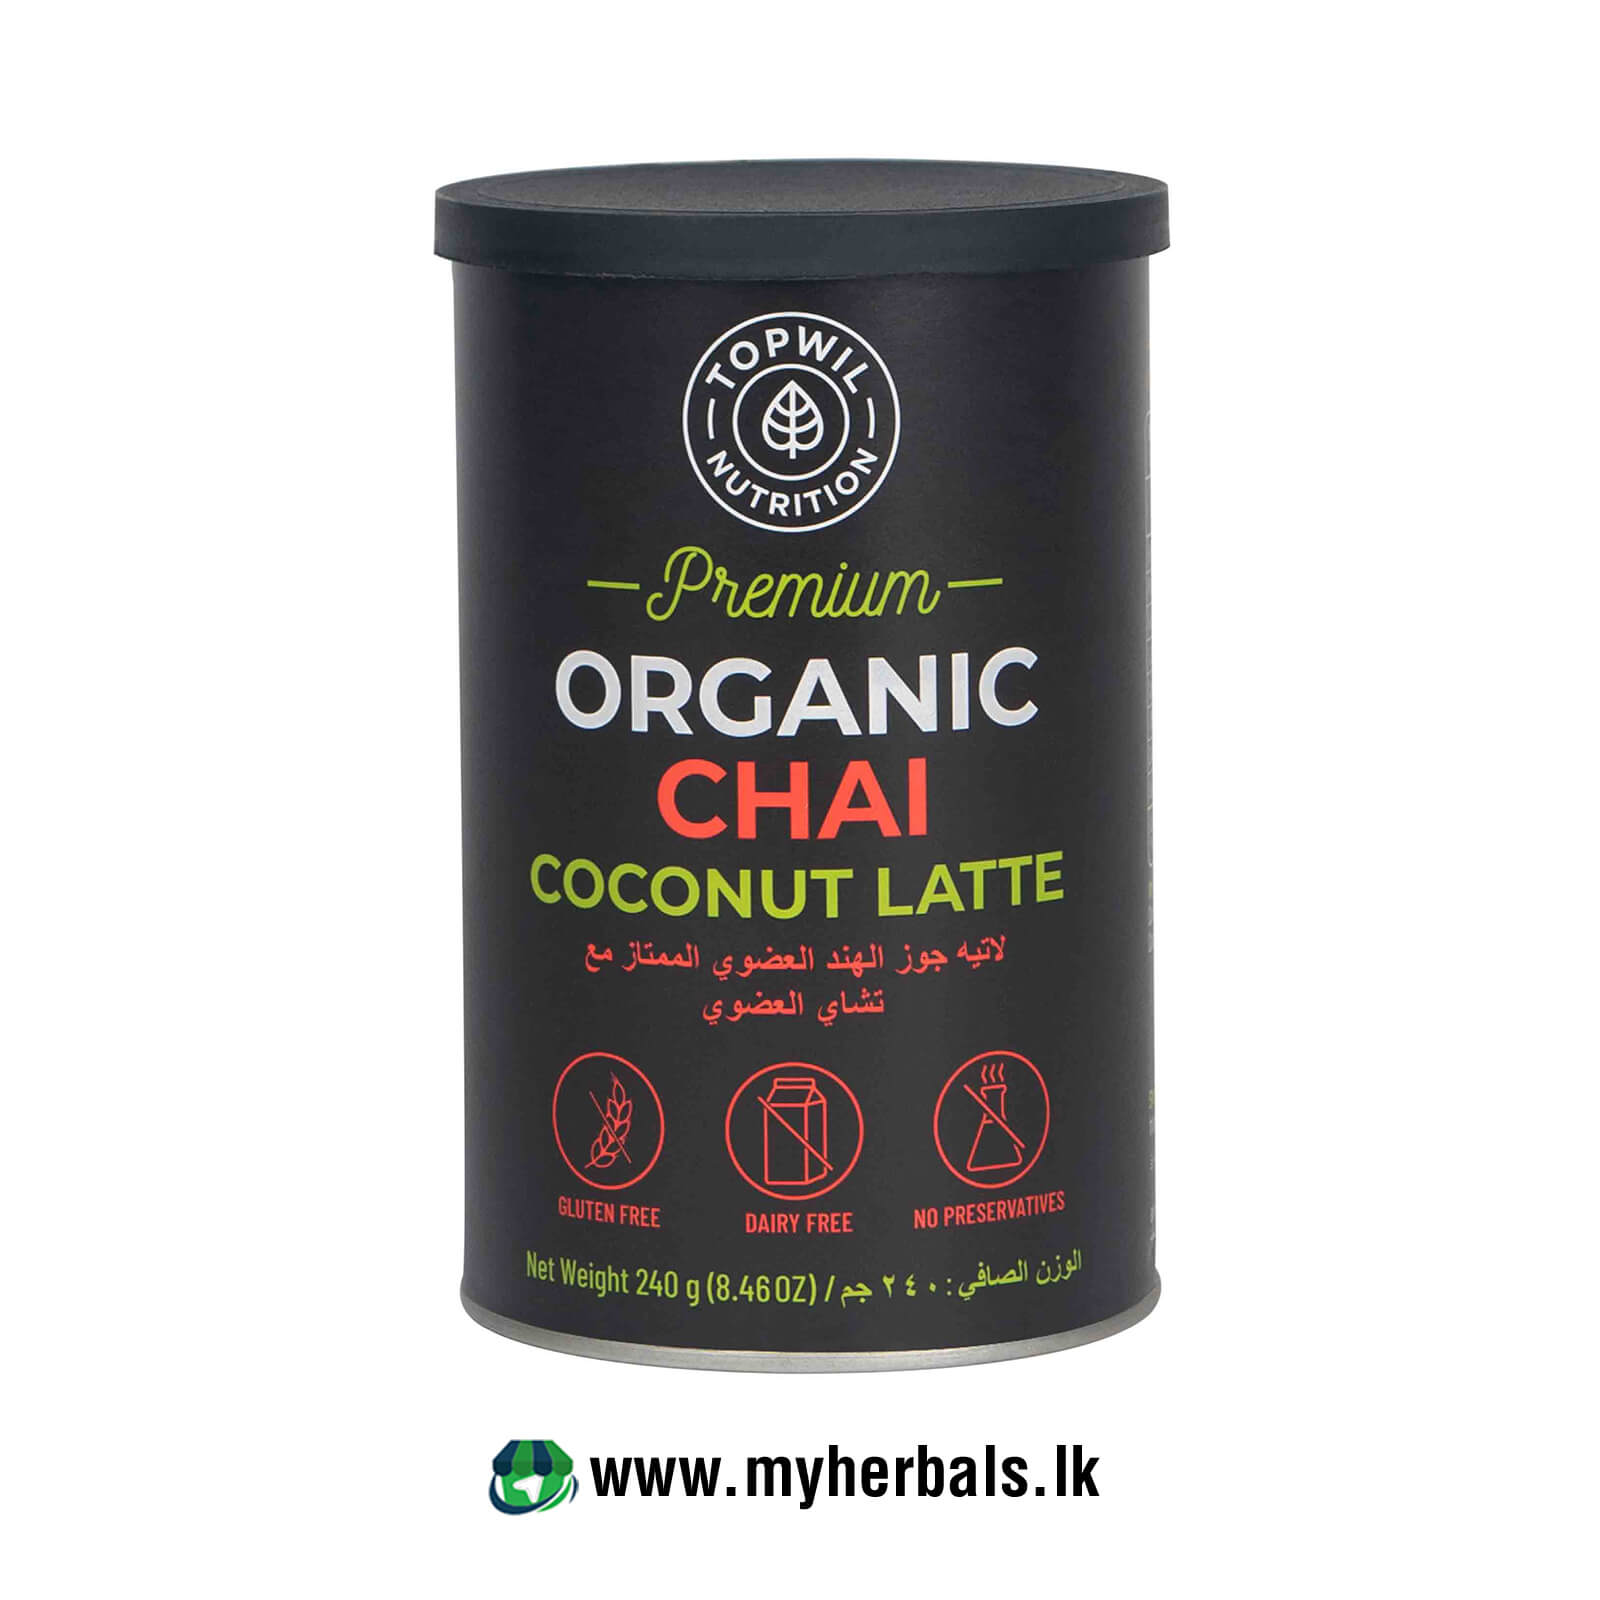 Premium Organic Chai Coconut Latte